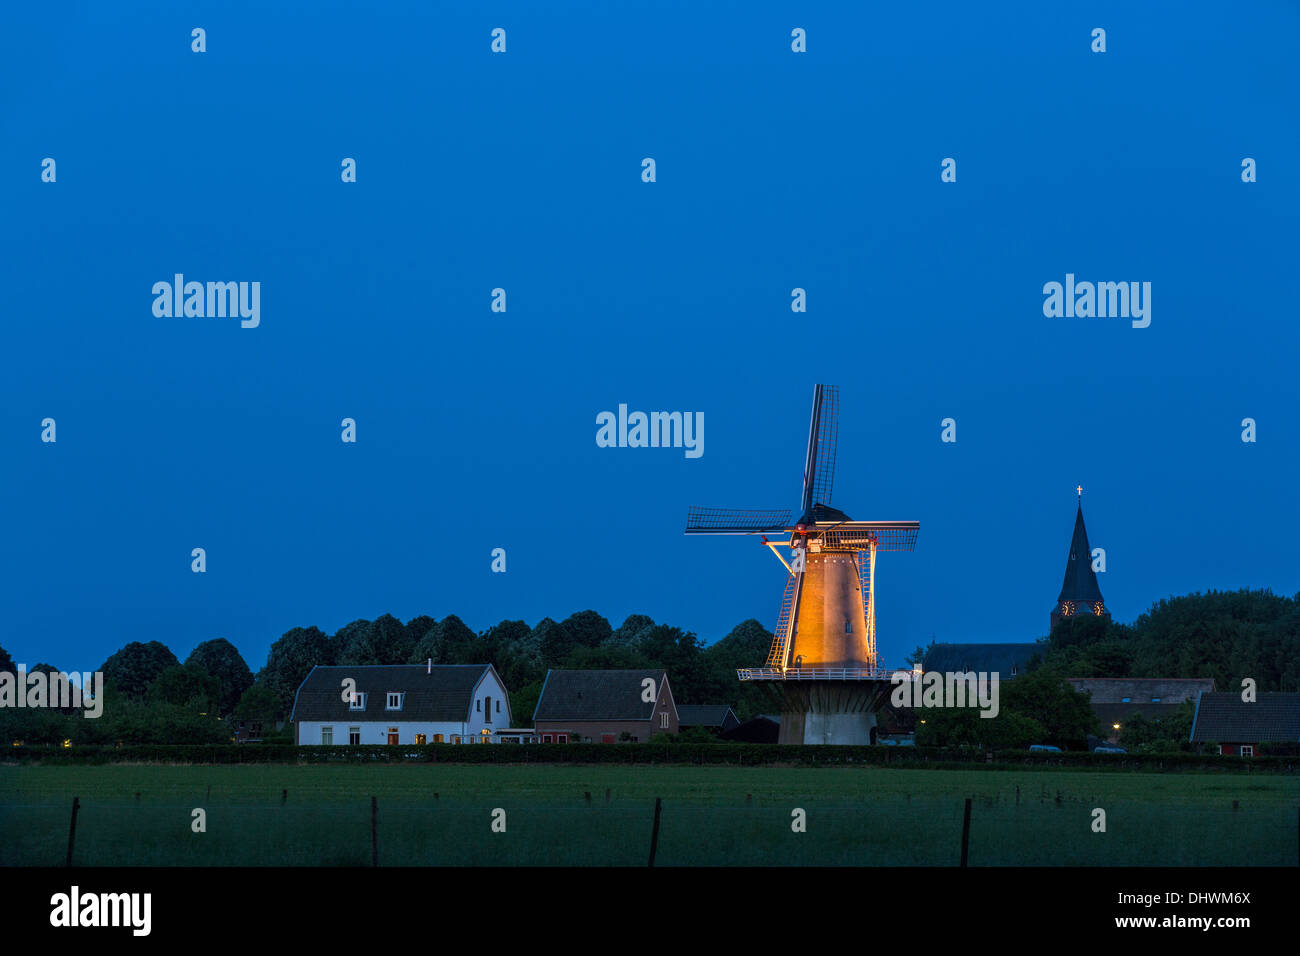 Niederlande, Schalkwijk, Aussicht auf Dorf, Kirche und Windmühle. Dämmerung. Dämmerung Stockfoto